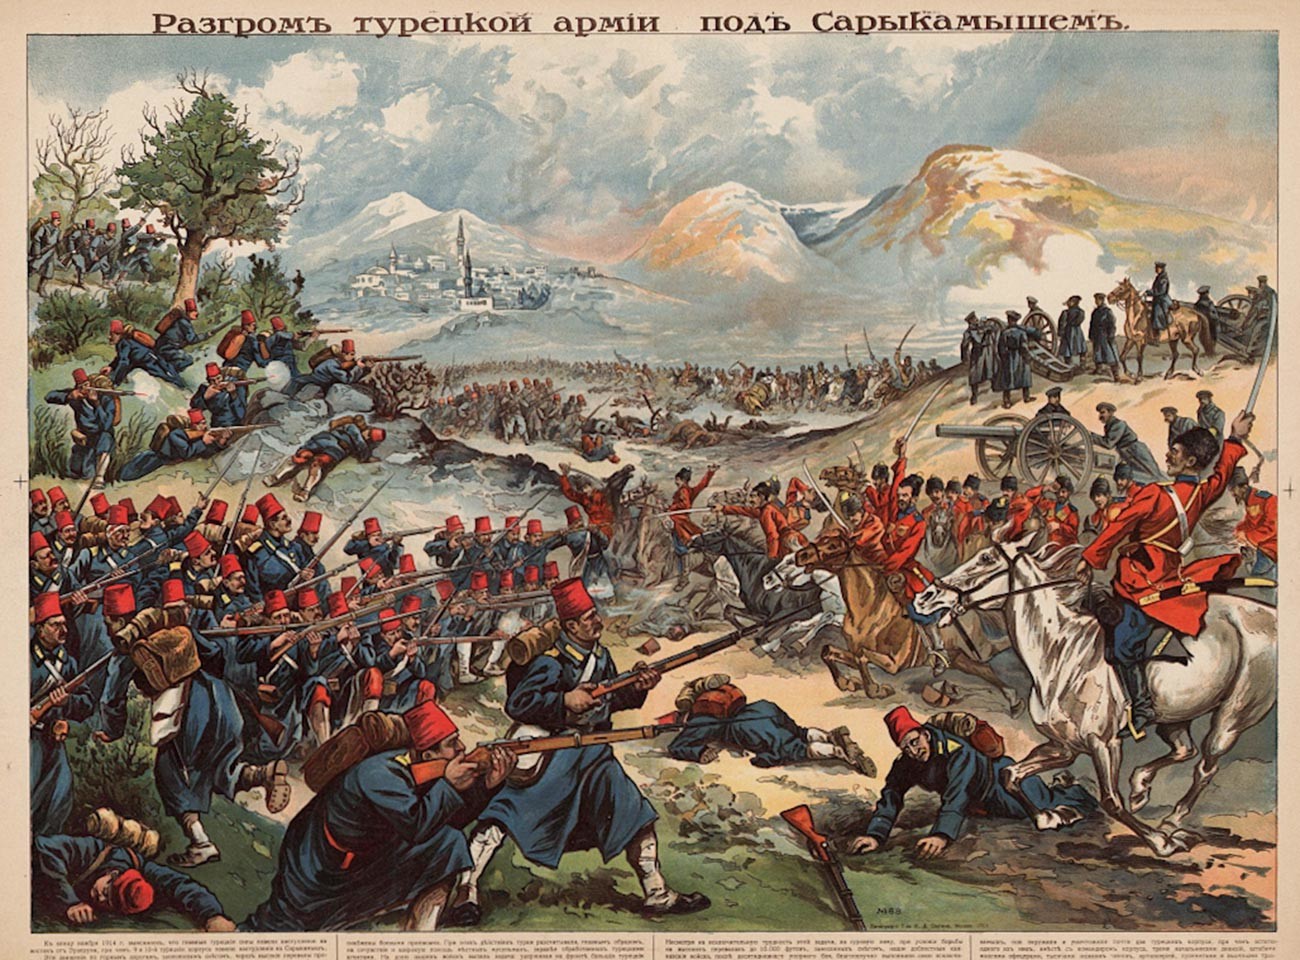 Ruski plakat s prikazanom pobjedom ruske vojske u bitci kod Sarikamiša.
